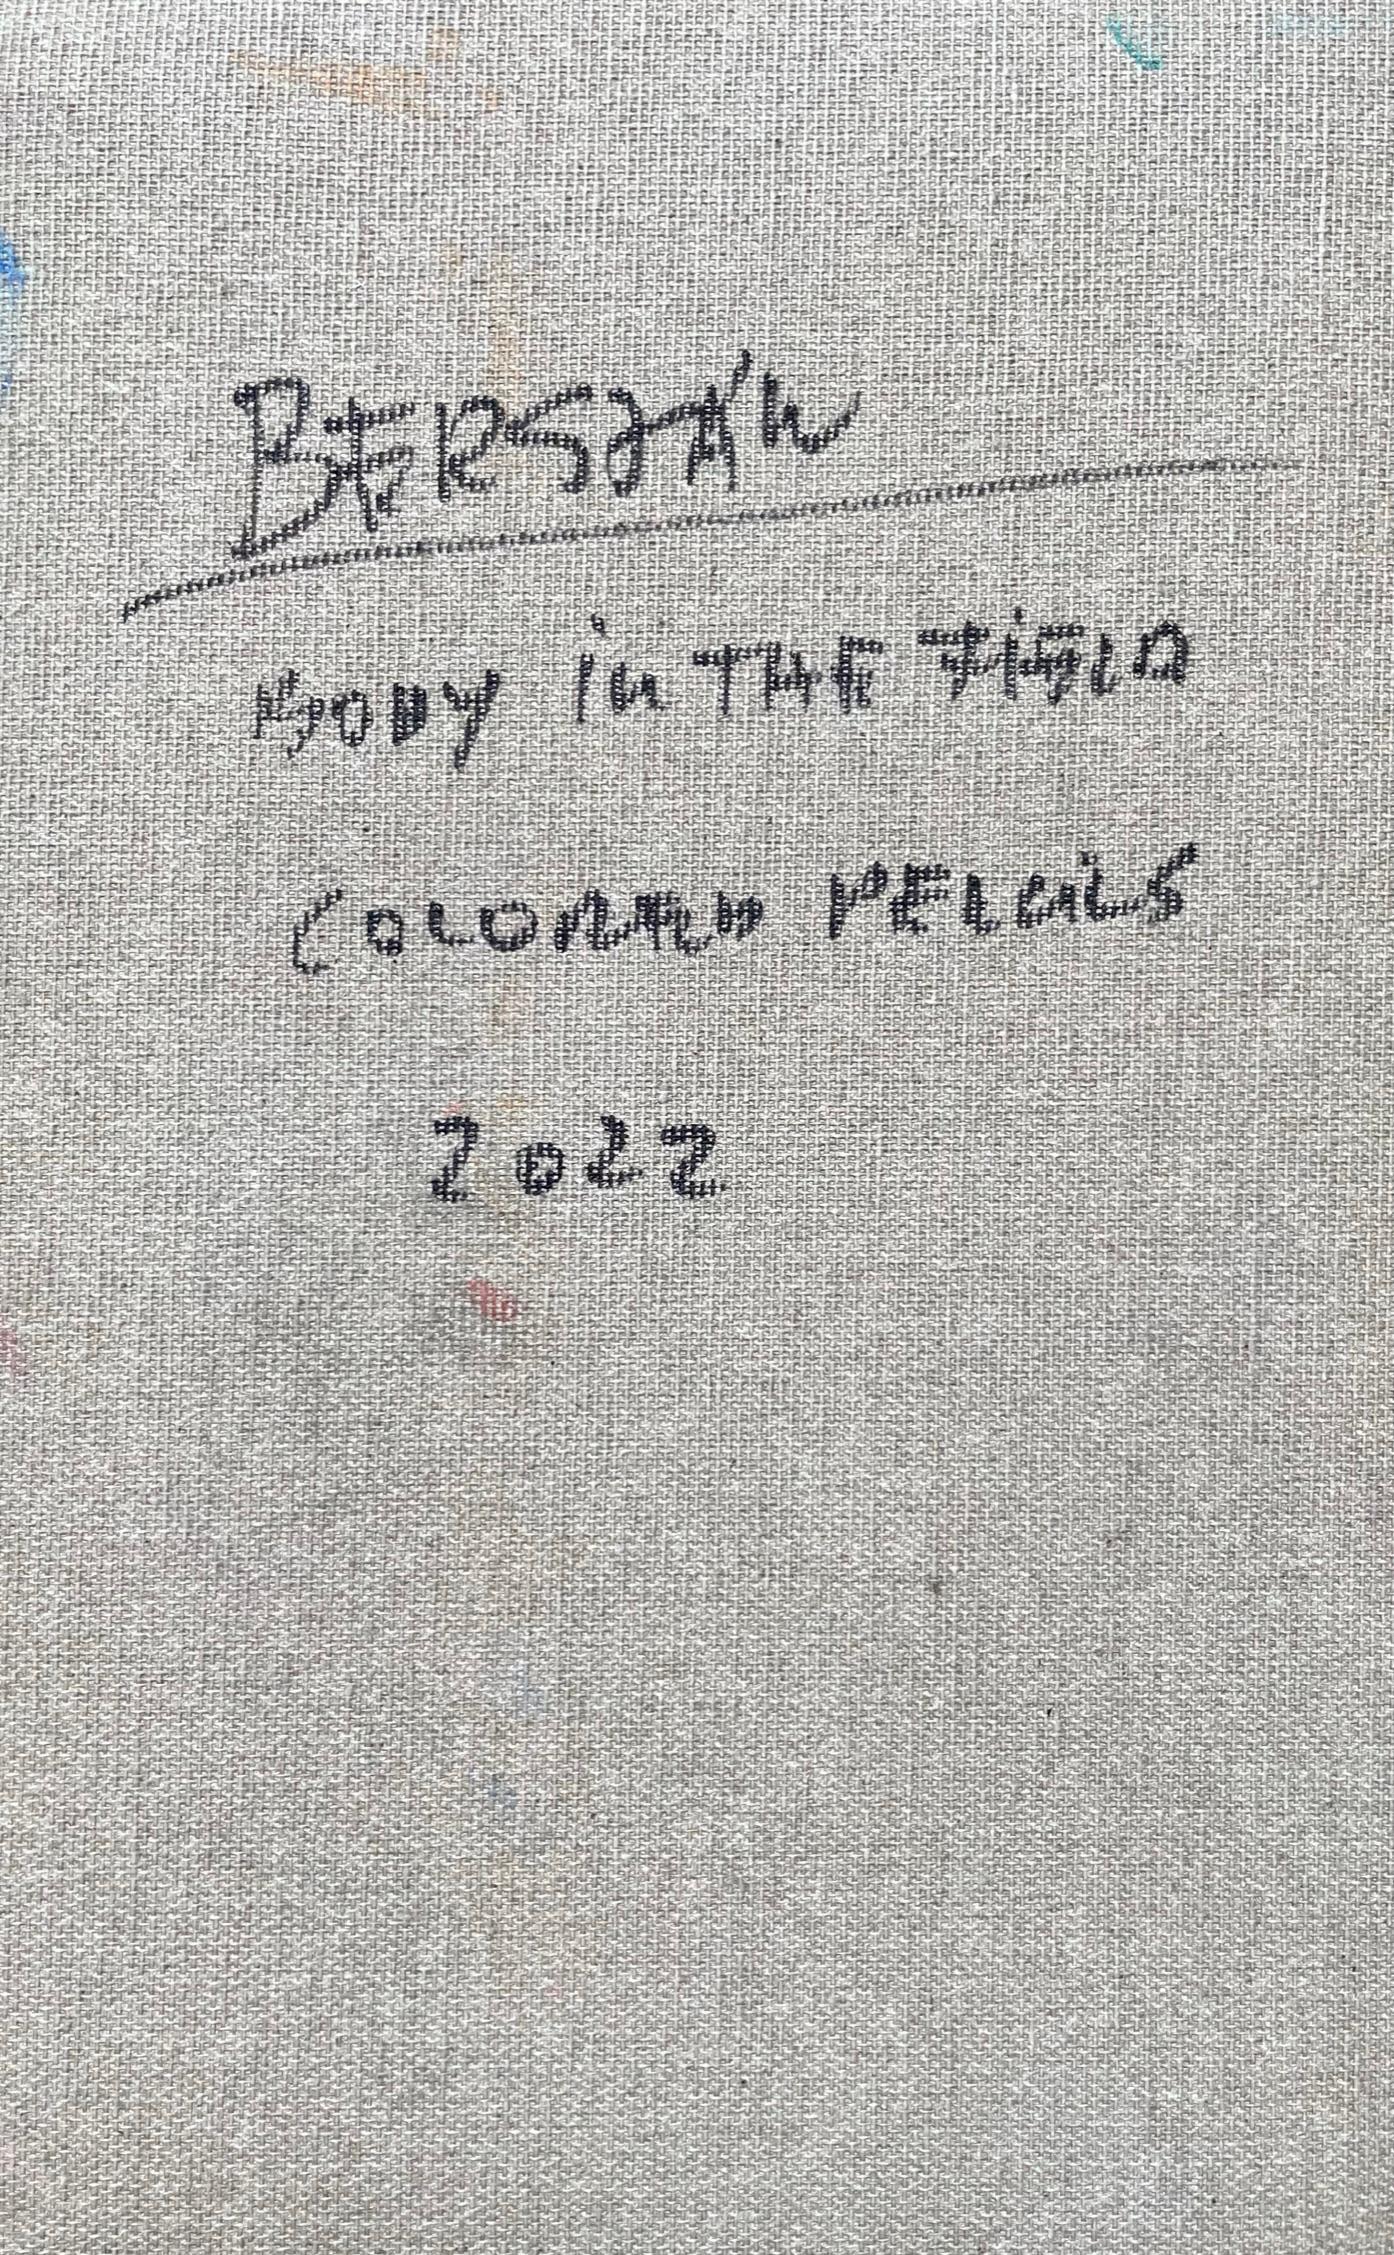 Body in the Field #7, 2022
crayon de couleur sur toile
9,84 H x 6,29 L en pouces.
25 H x 16 L cm
Signé au dos

Zsolt Berszán incarne dans ses œuvres la dissolution du corps humain à travers le prisme du fragment, du corps en morceaux et de la